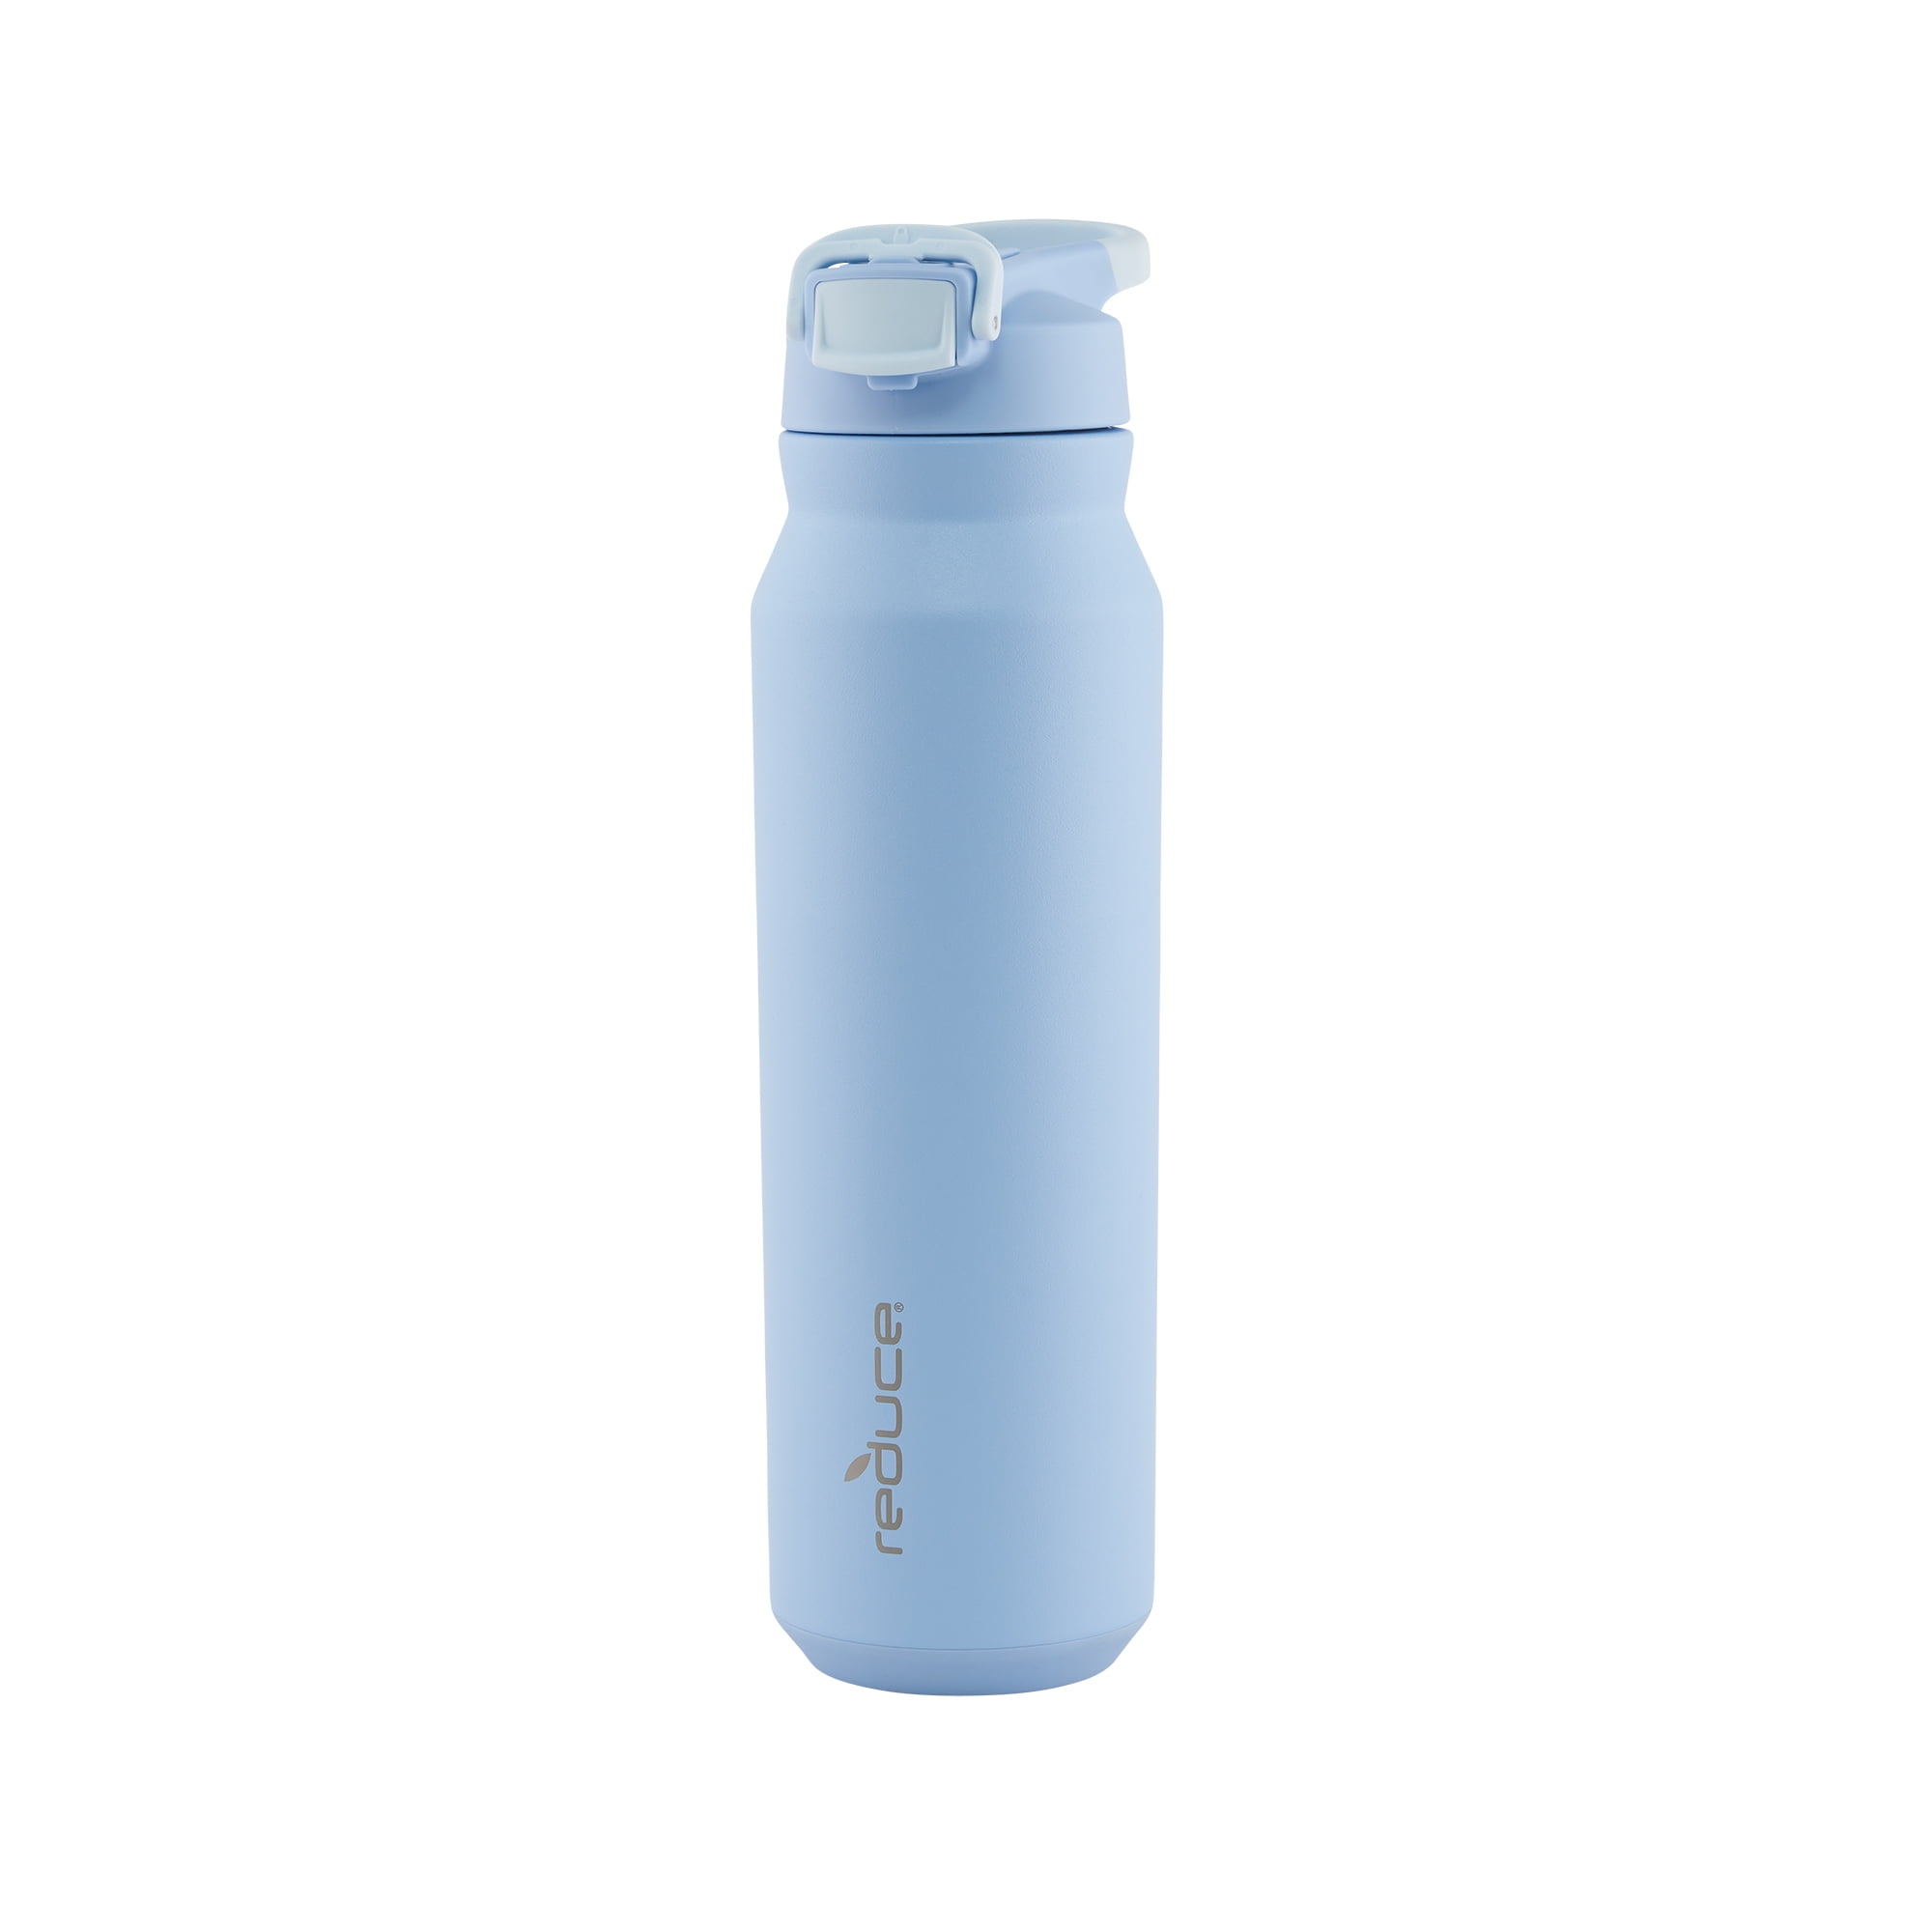 Reduce Hydrate Water Bottle - Glacier 50 oz